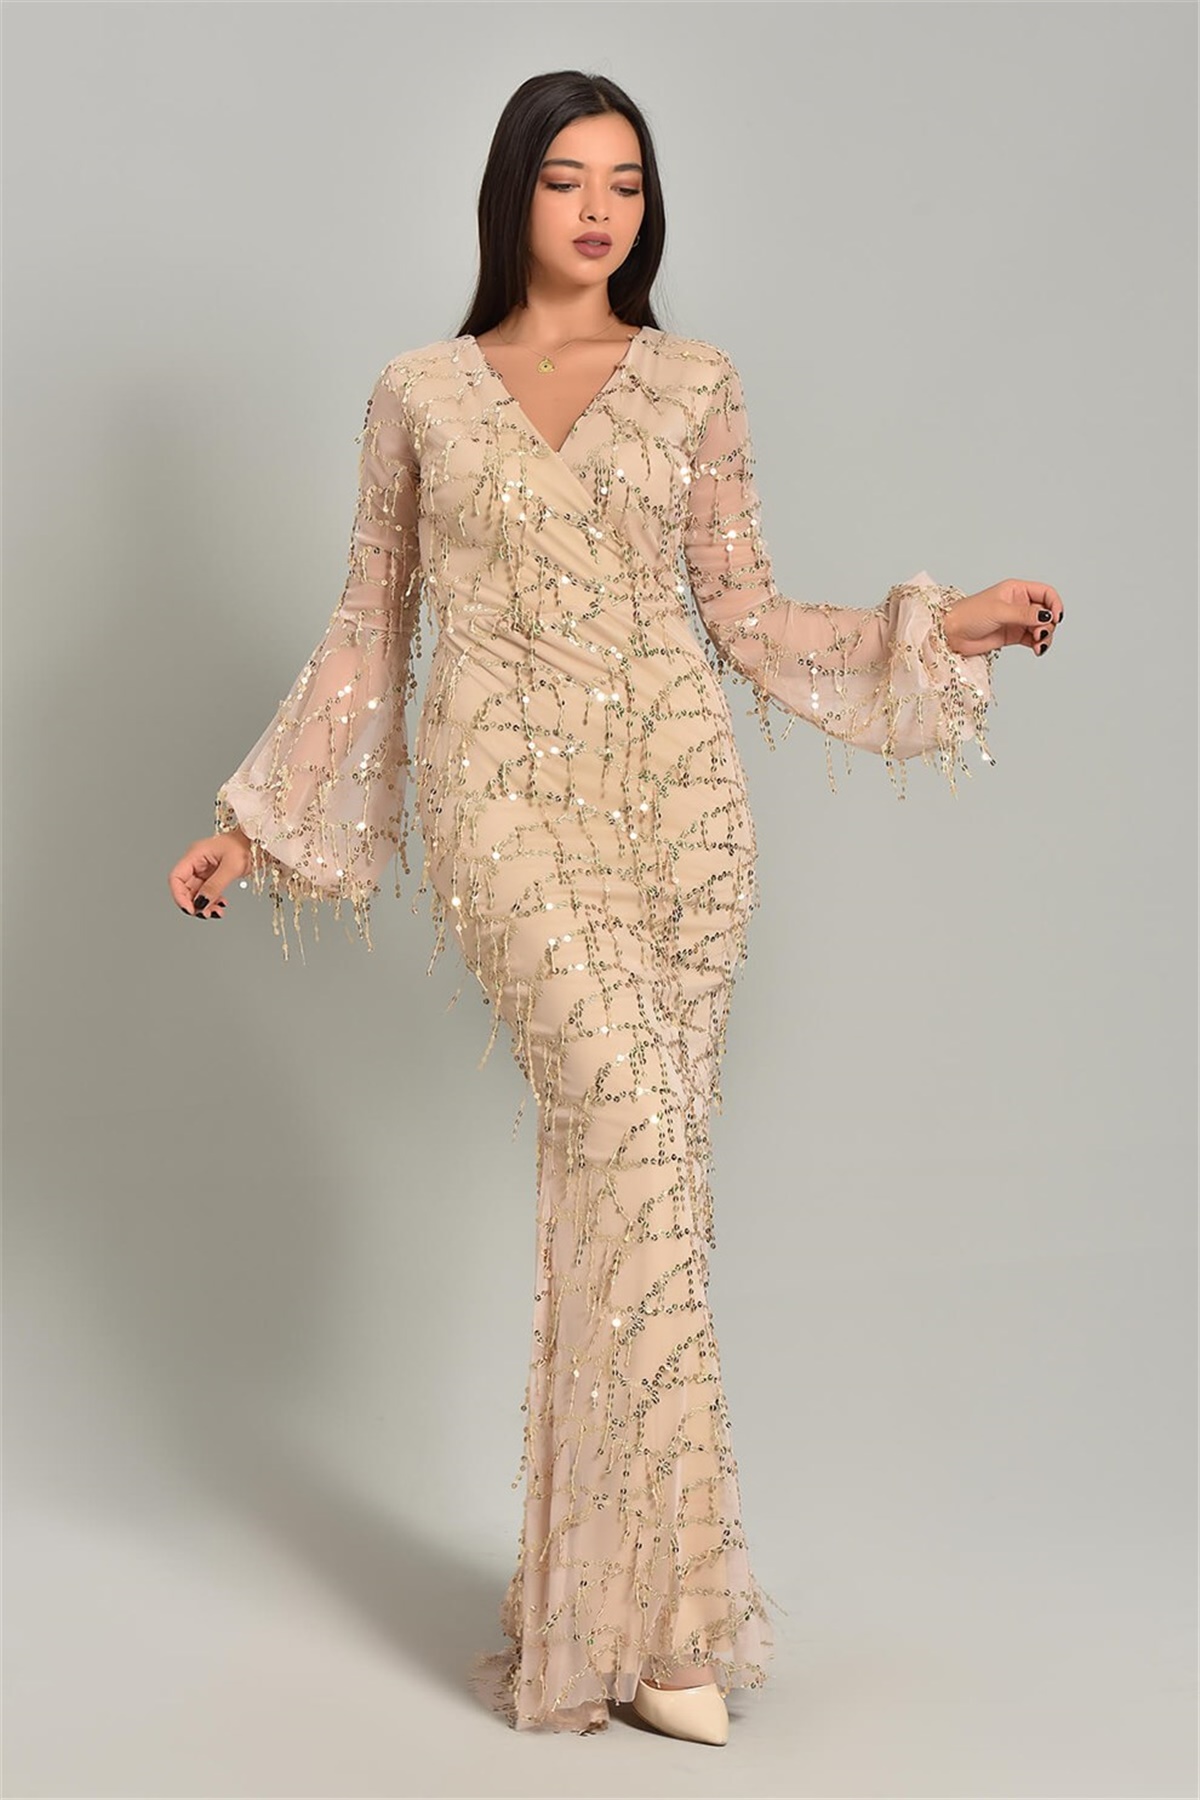 Vizon Pul Payet Tasarım Abiye Elbise - Moda Kapımda İle Kapınızda!